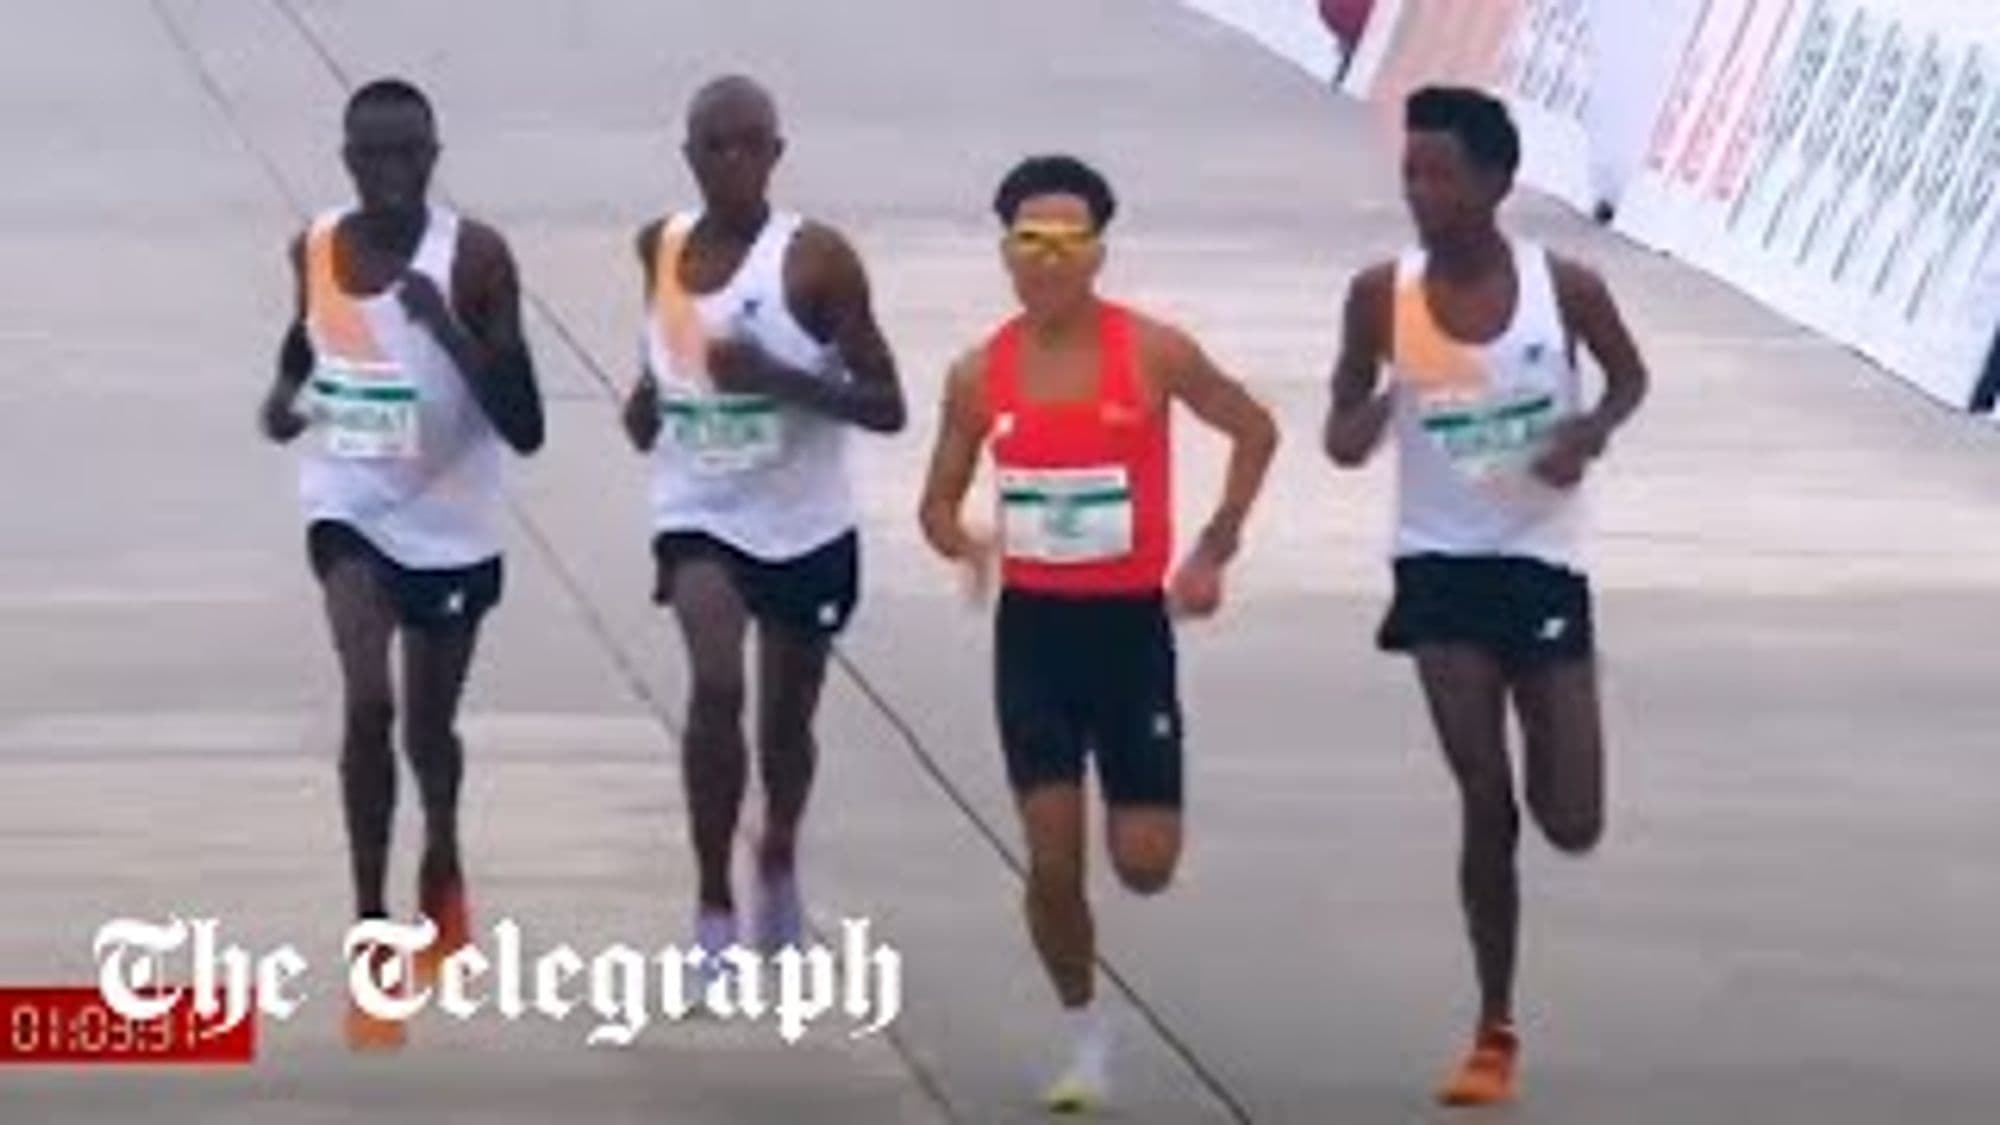 # London Marathon 2022: Peres Jepchirchir and Alexander Mutiso Munyao Break Records